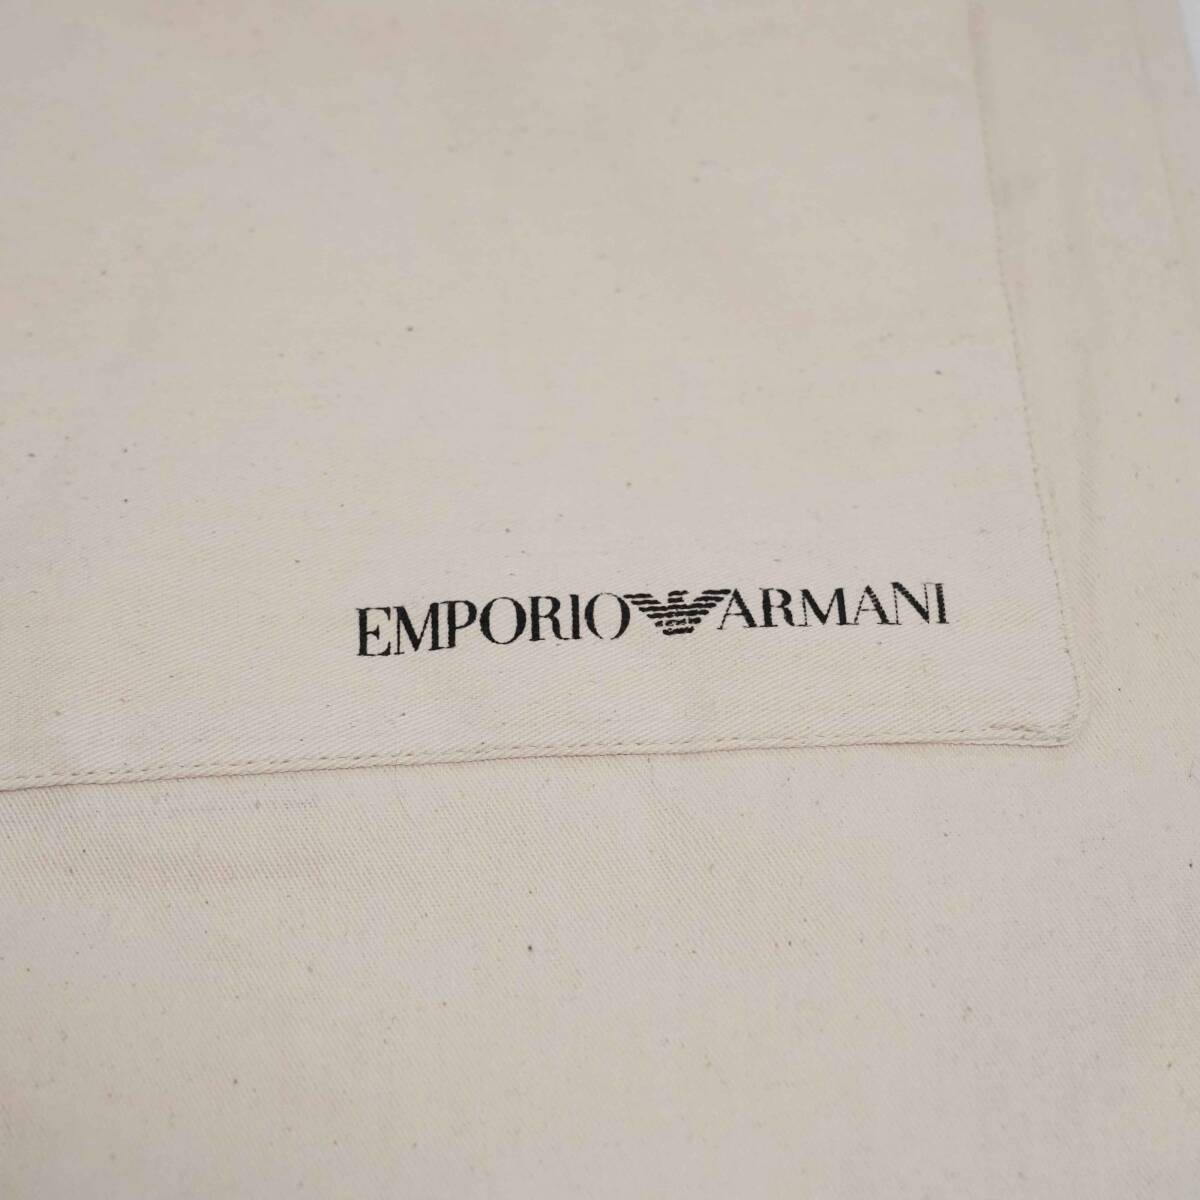 EMPORIO ARMANI トートBAG エンポリオアルマーニ エコバッグ 生成りカラー